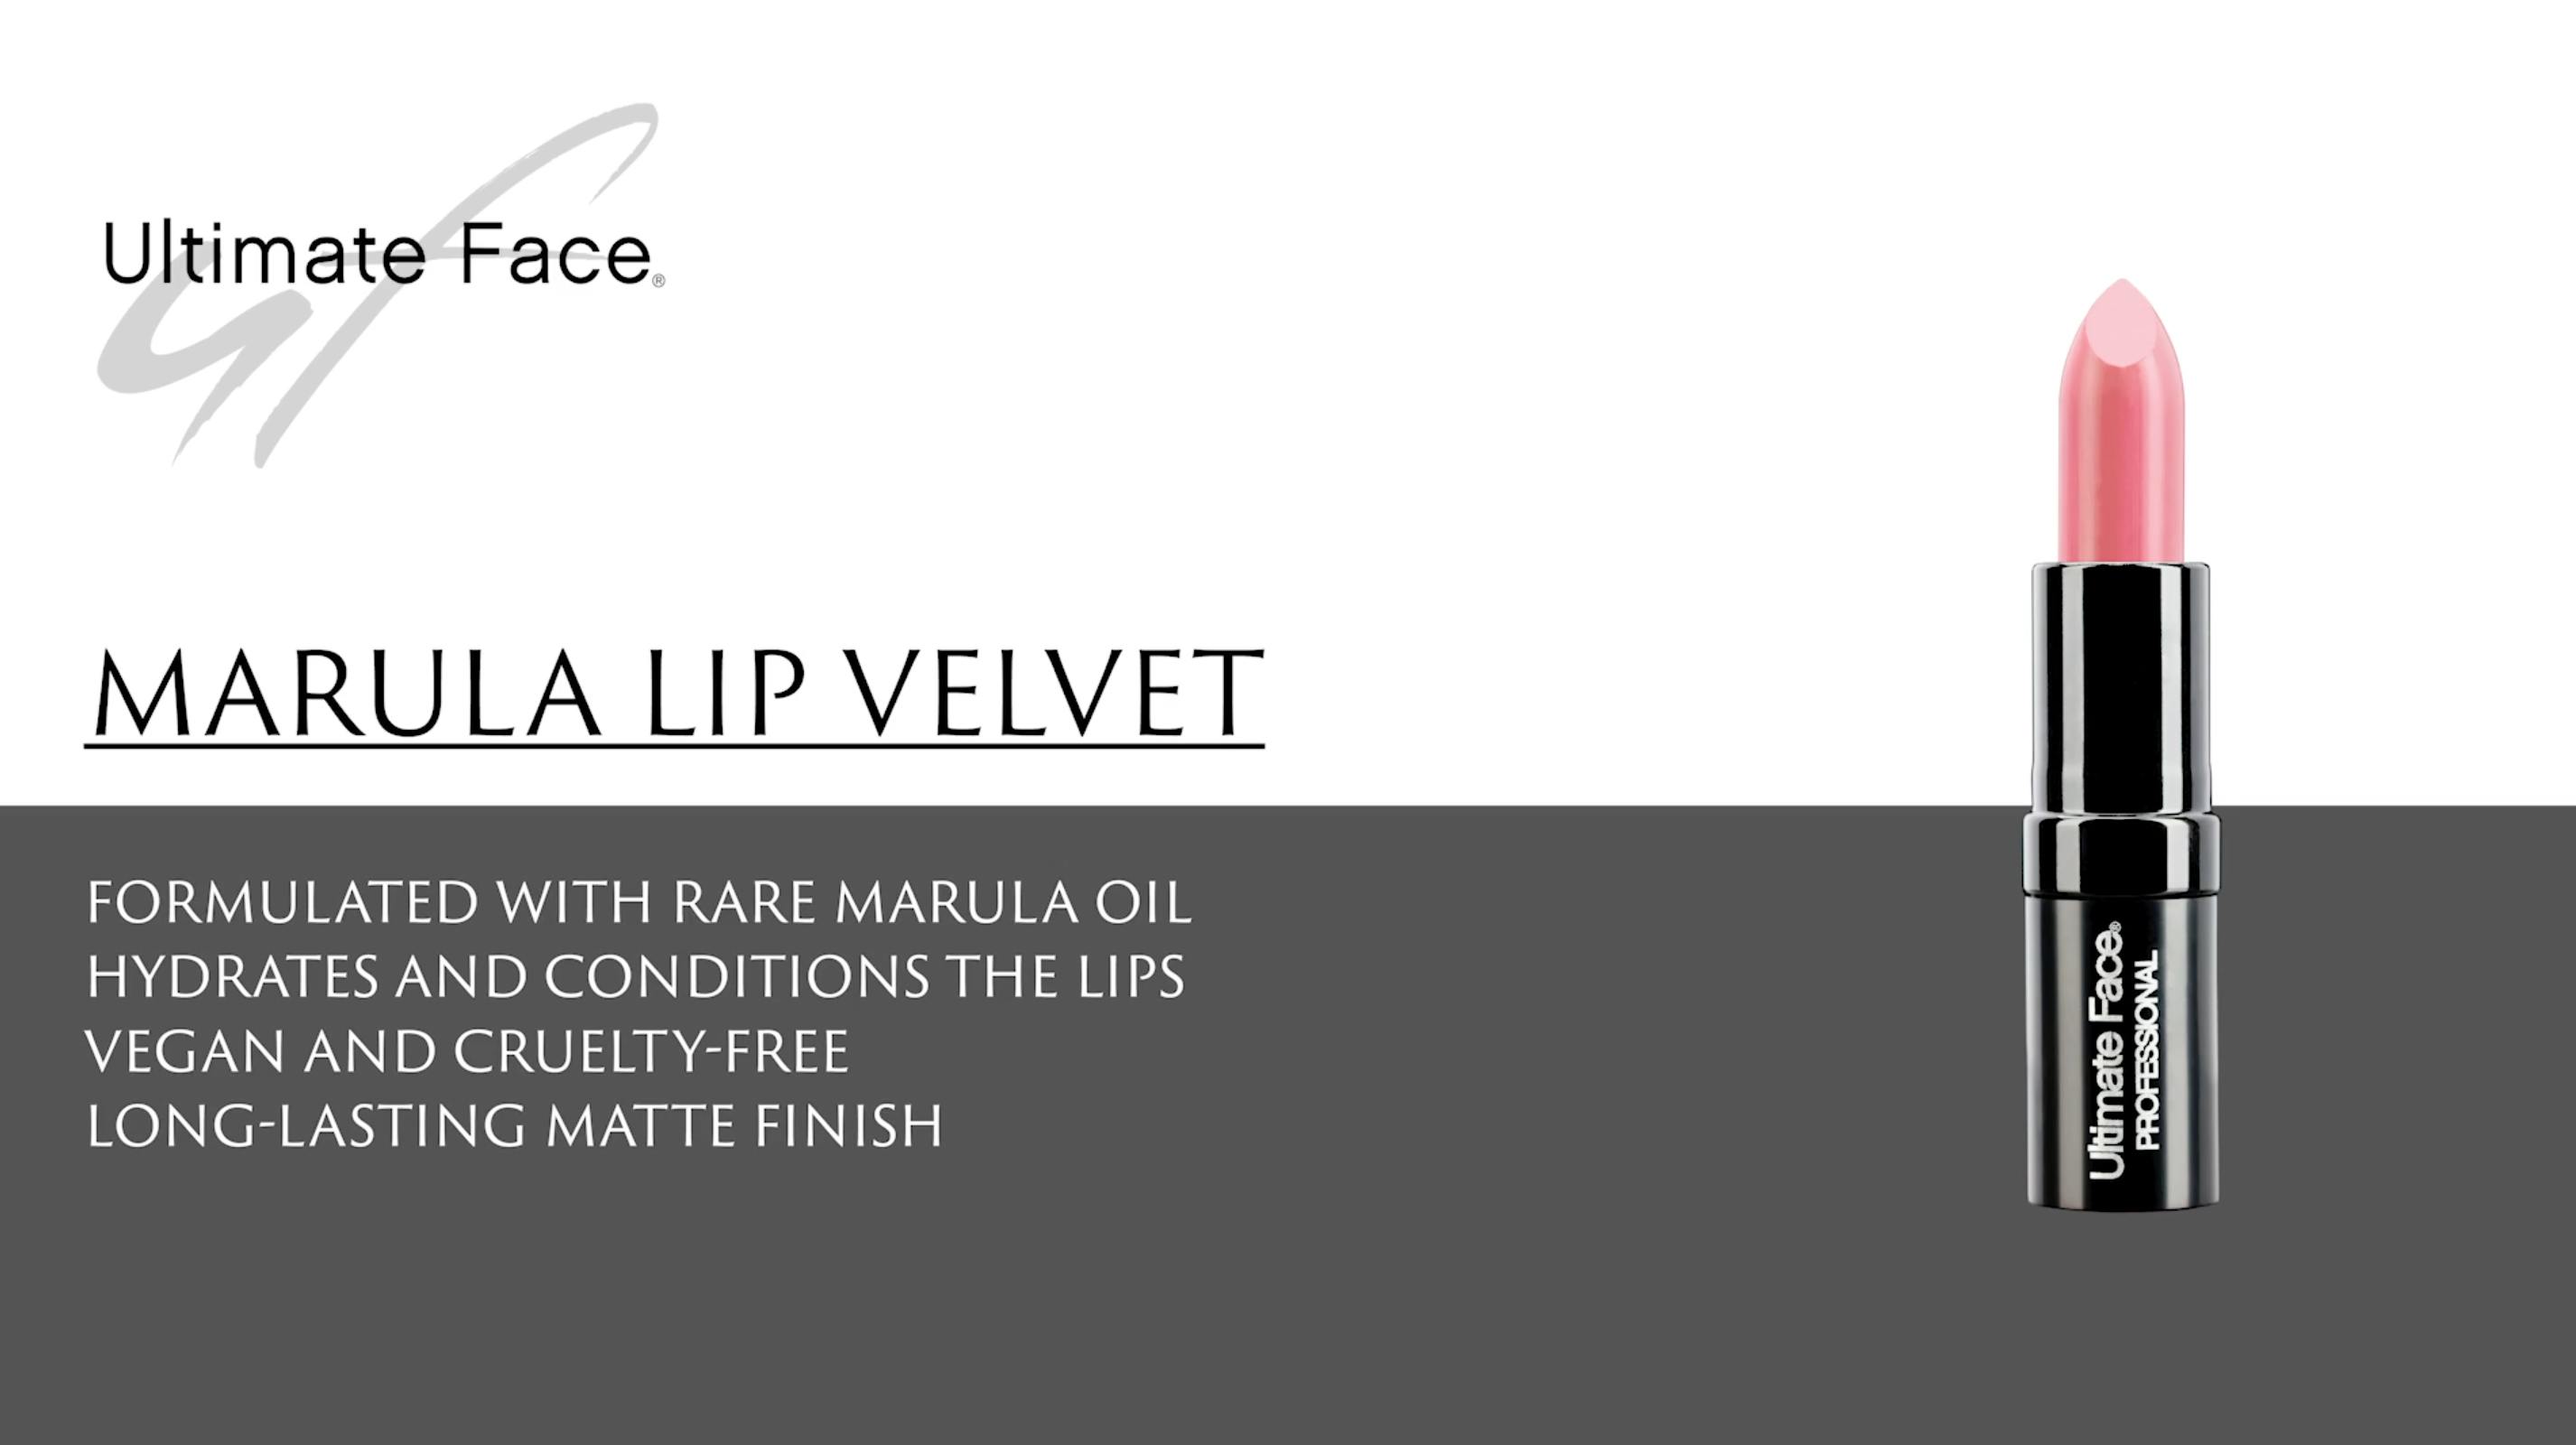 Ultimate Face Marula Oil Lip Velvet